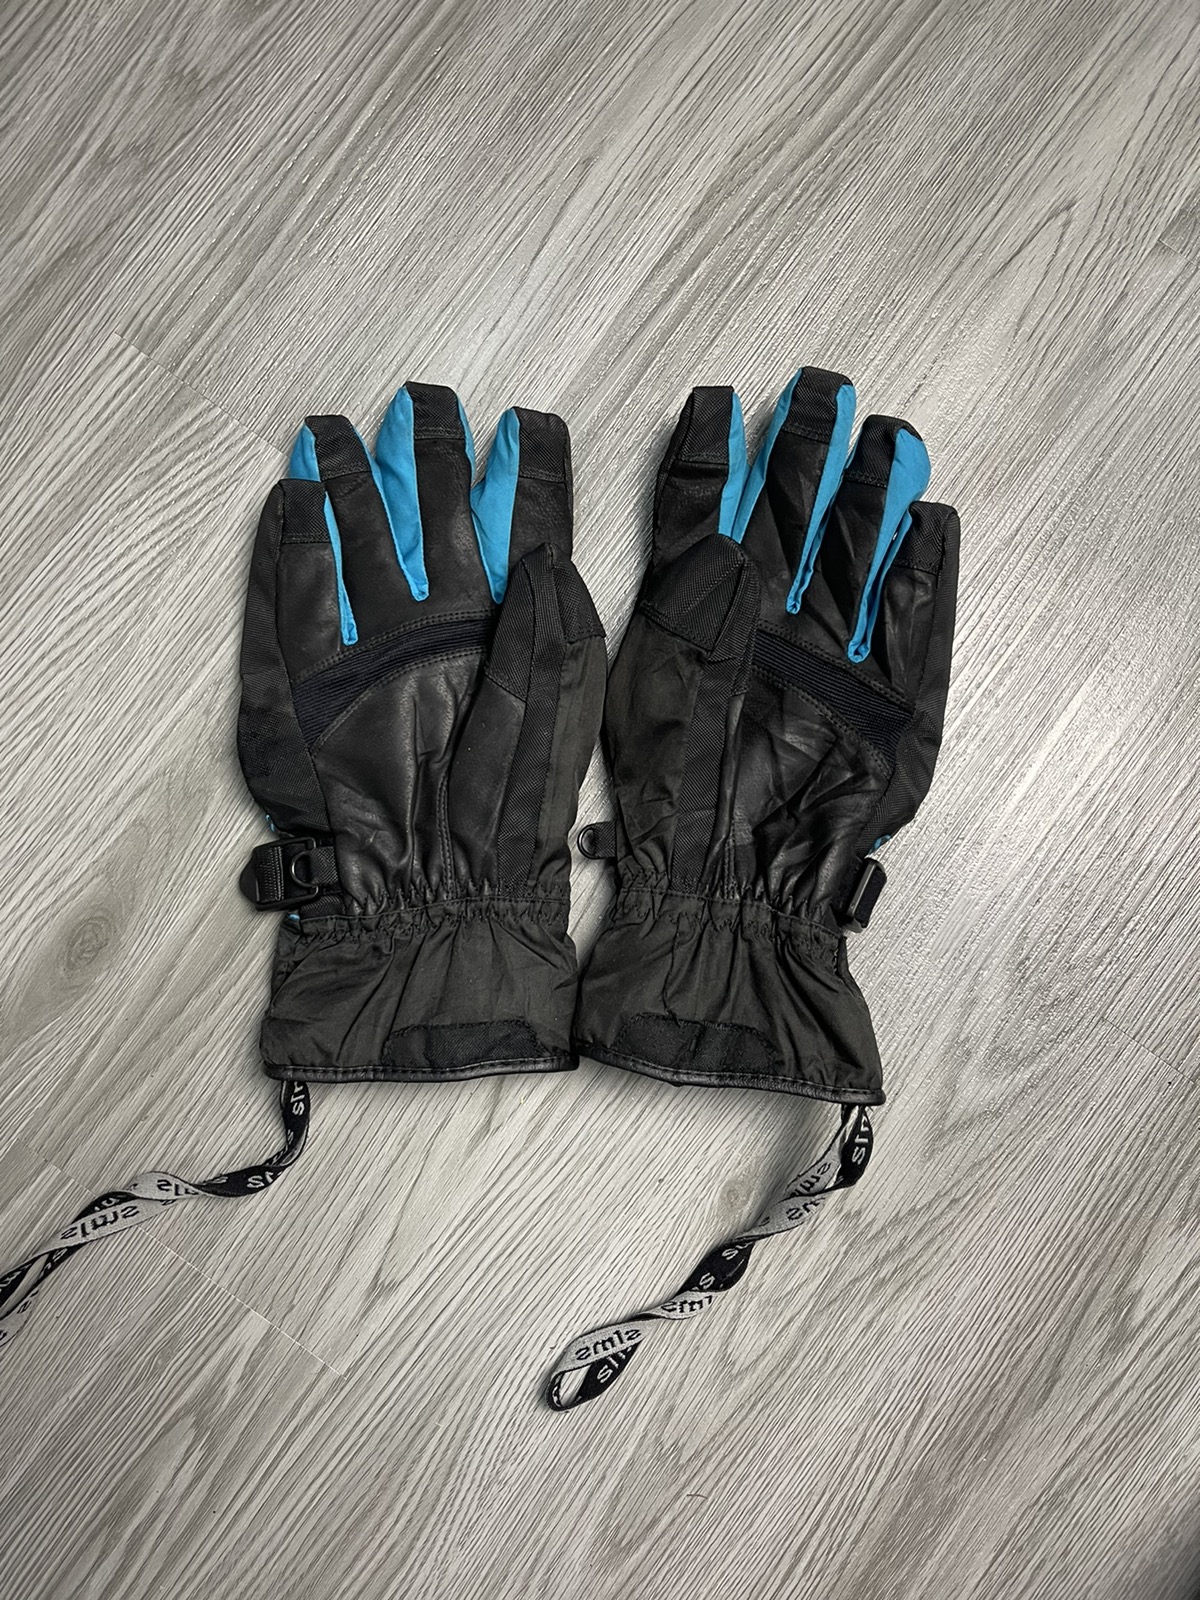 Goretex - Sims GoreTex Snow Glove medium size - 2